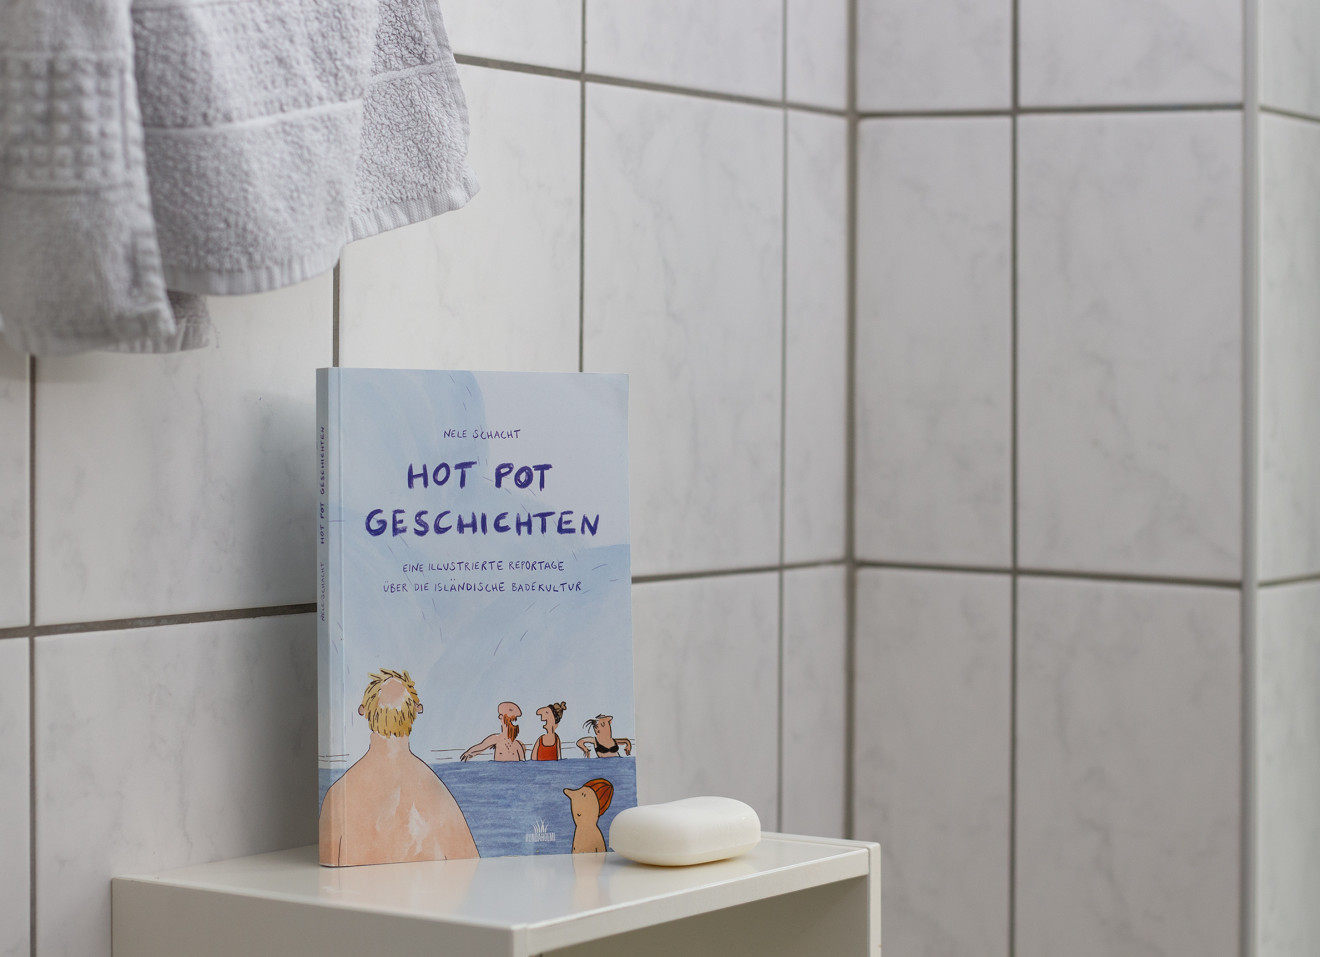 Das Buch steht vor einer gefliesten Badezimmerwand. Auf dem Buchtitel befindet sich eine Zeichnung von mehreren Menschen, die in einem Thermalbad sitzen und sich unterhalten.